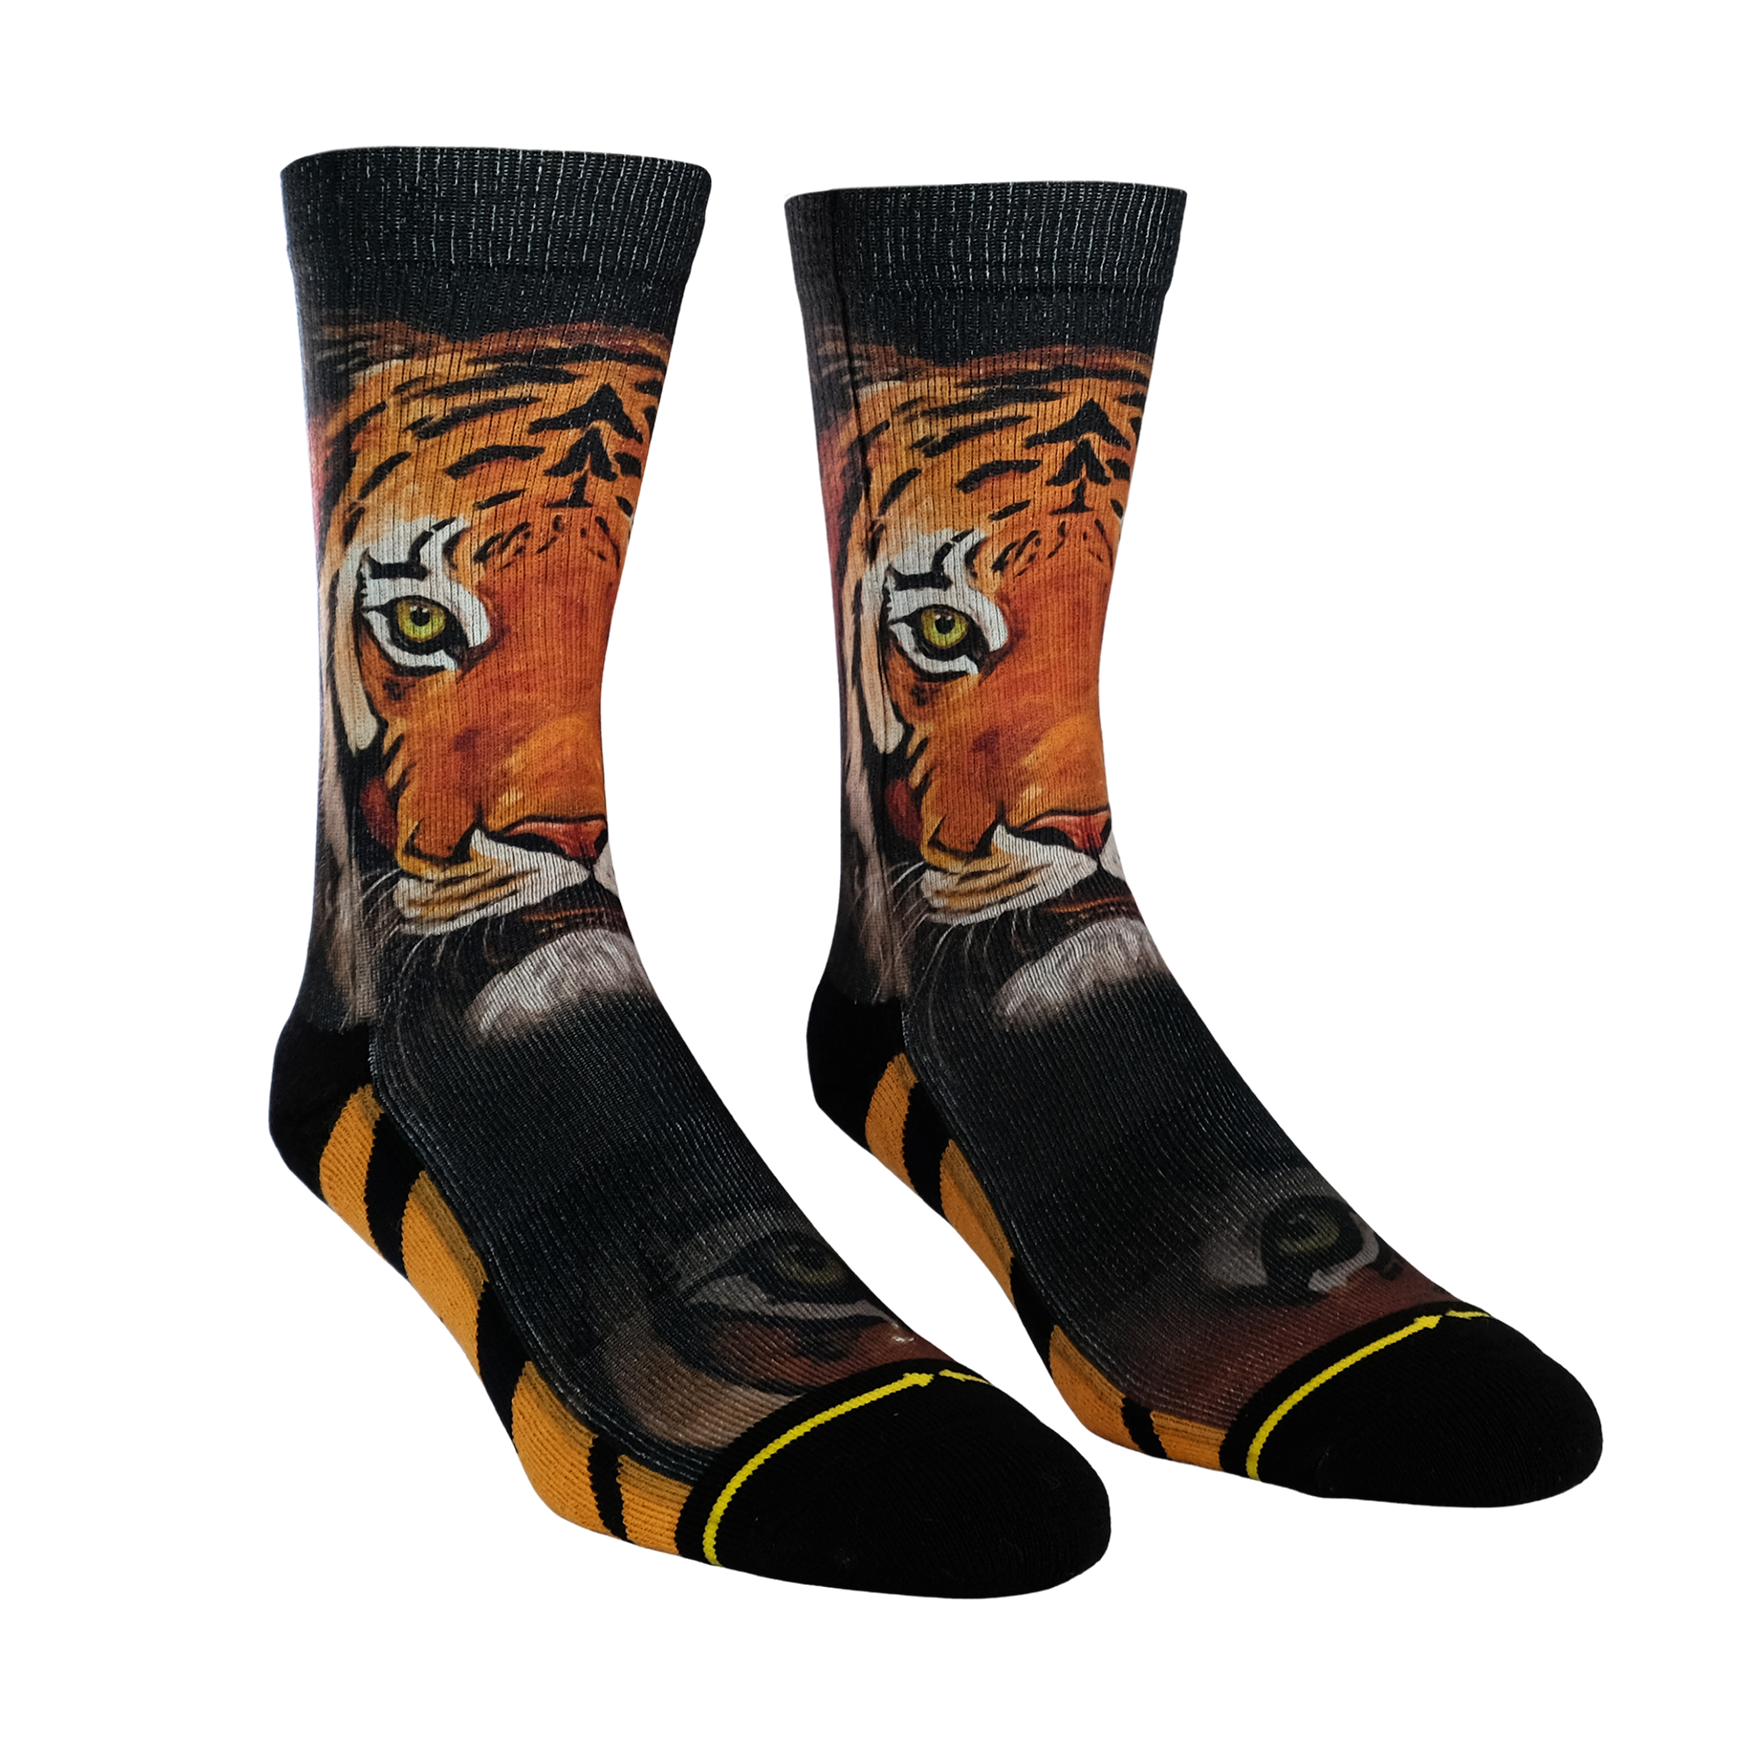 Tiger Crew Socks